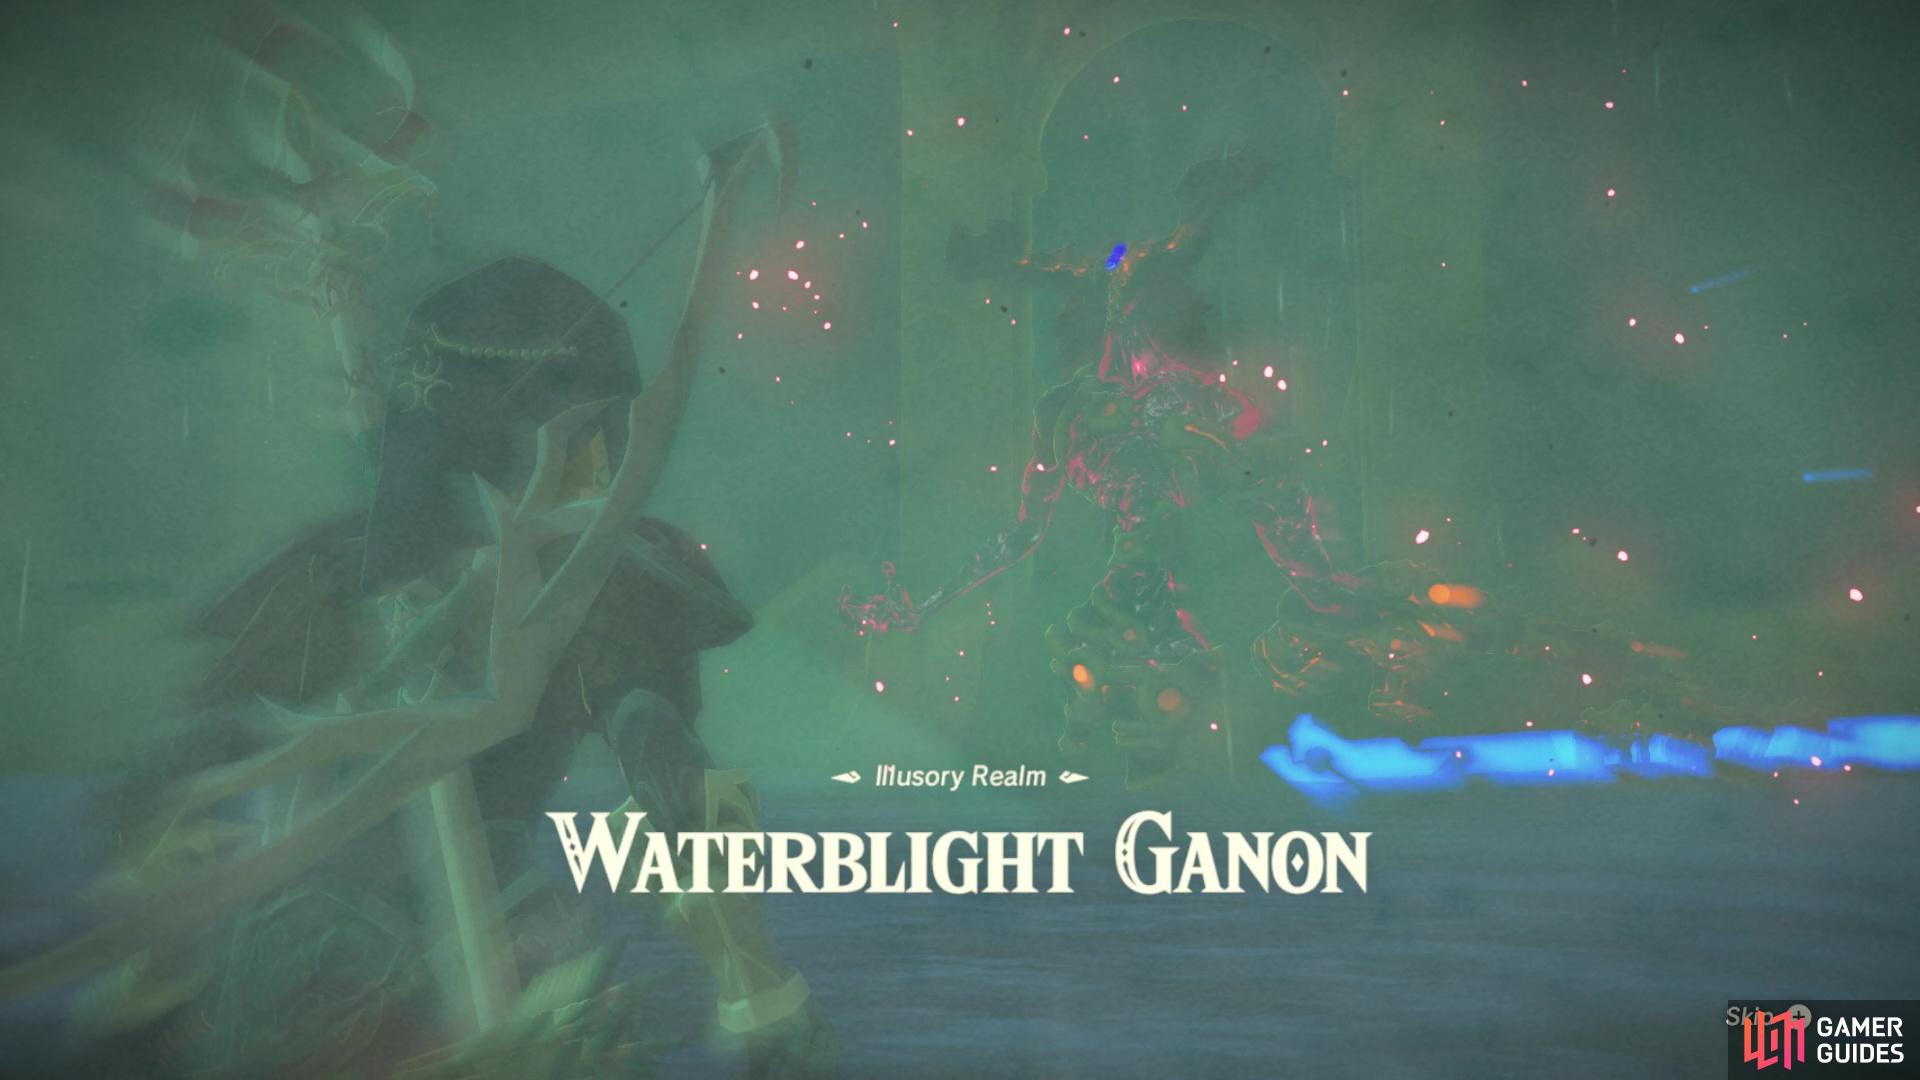 Return of the Waterblight Ganon!